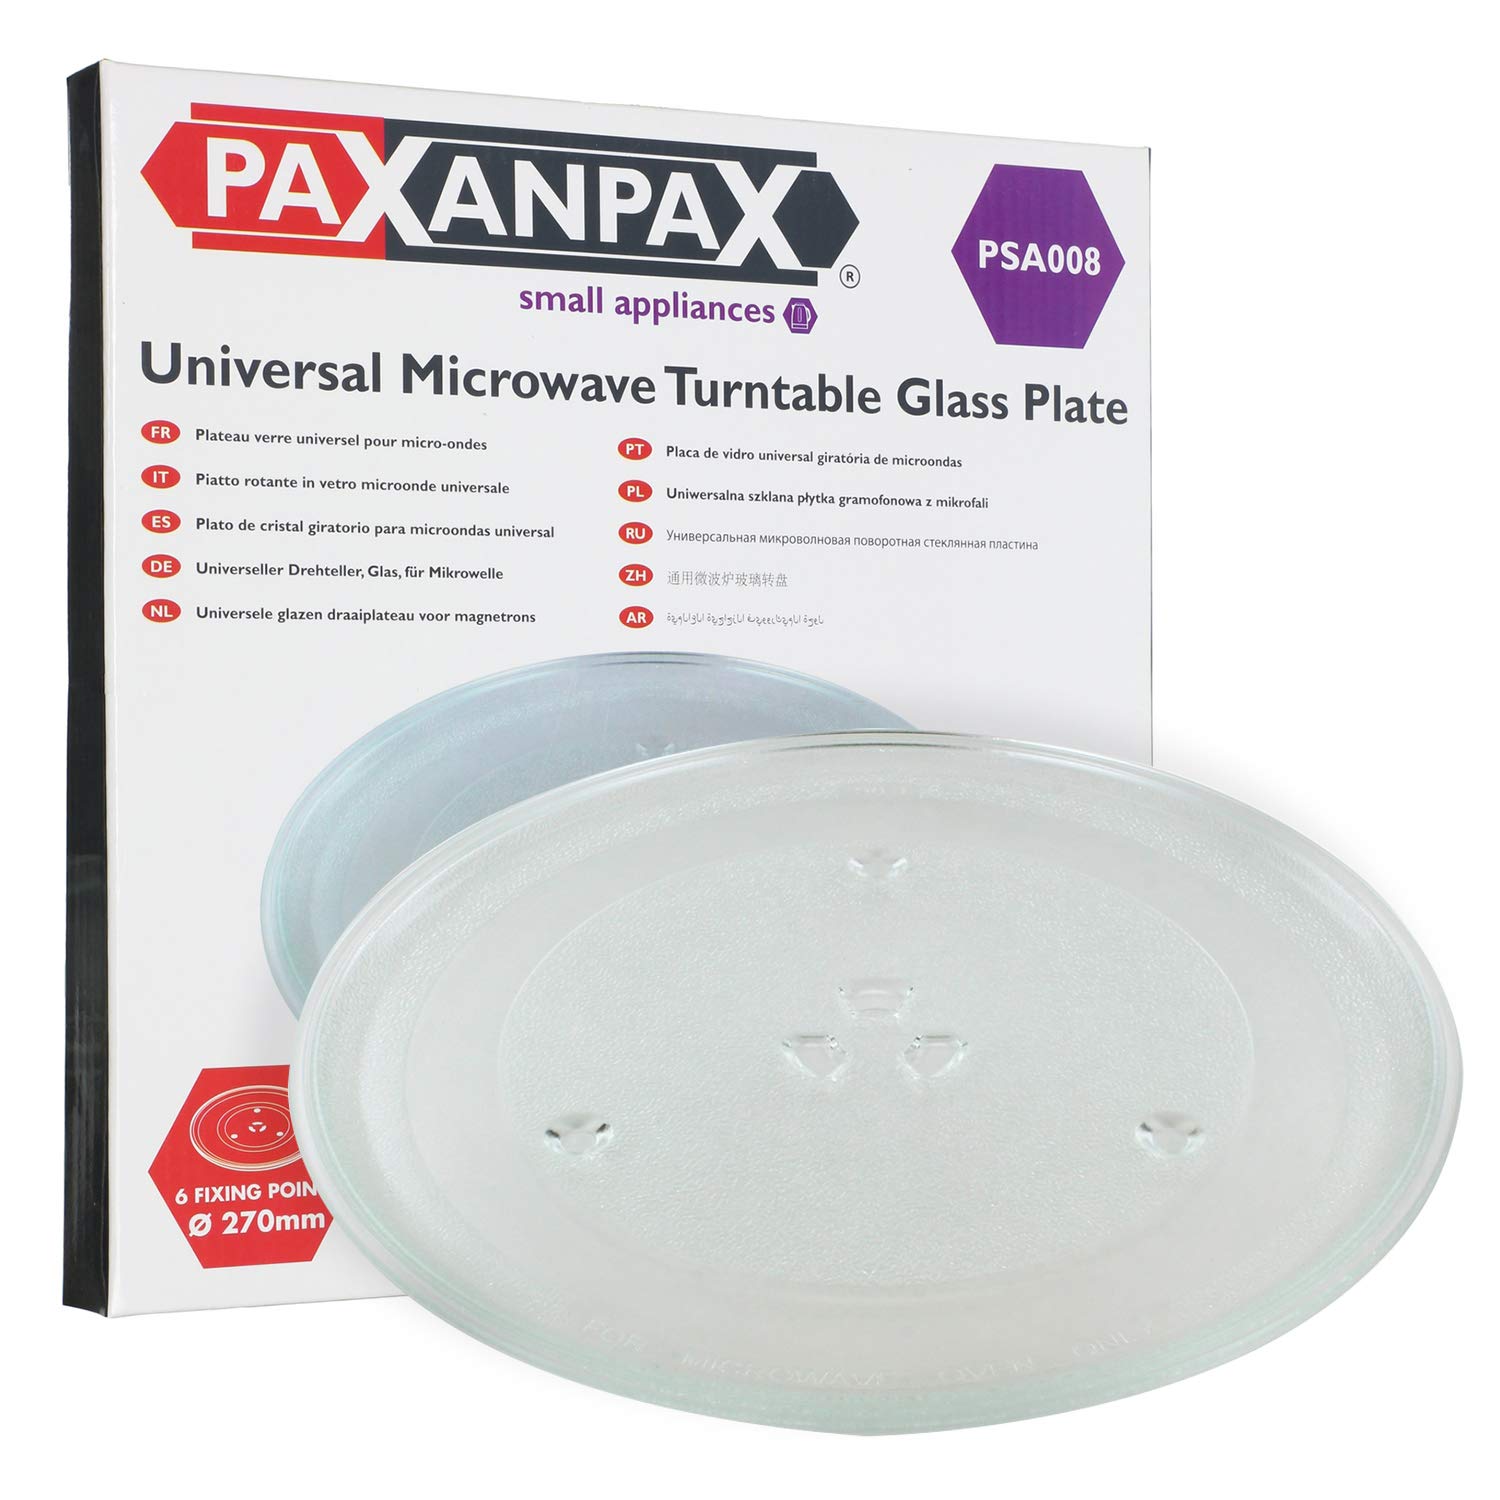 Paxanpax PSA008 Universal-Drehteller für Mikrowelle, Glasplatte mit 6 Fixierern (270 mm)